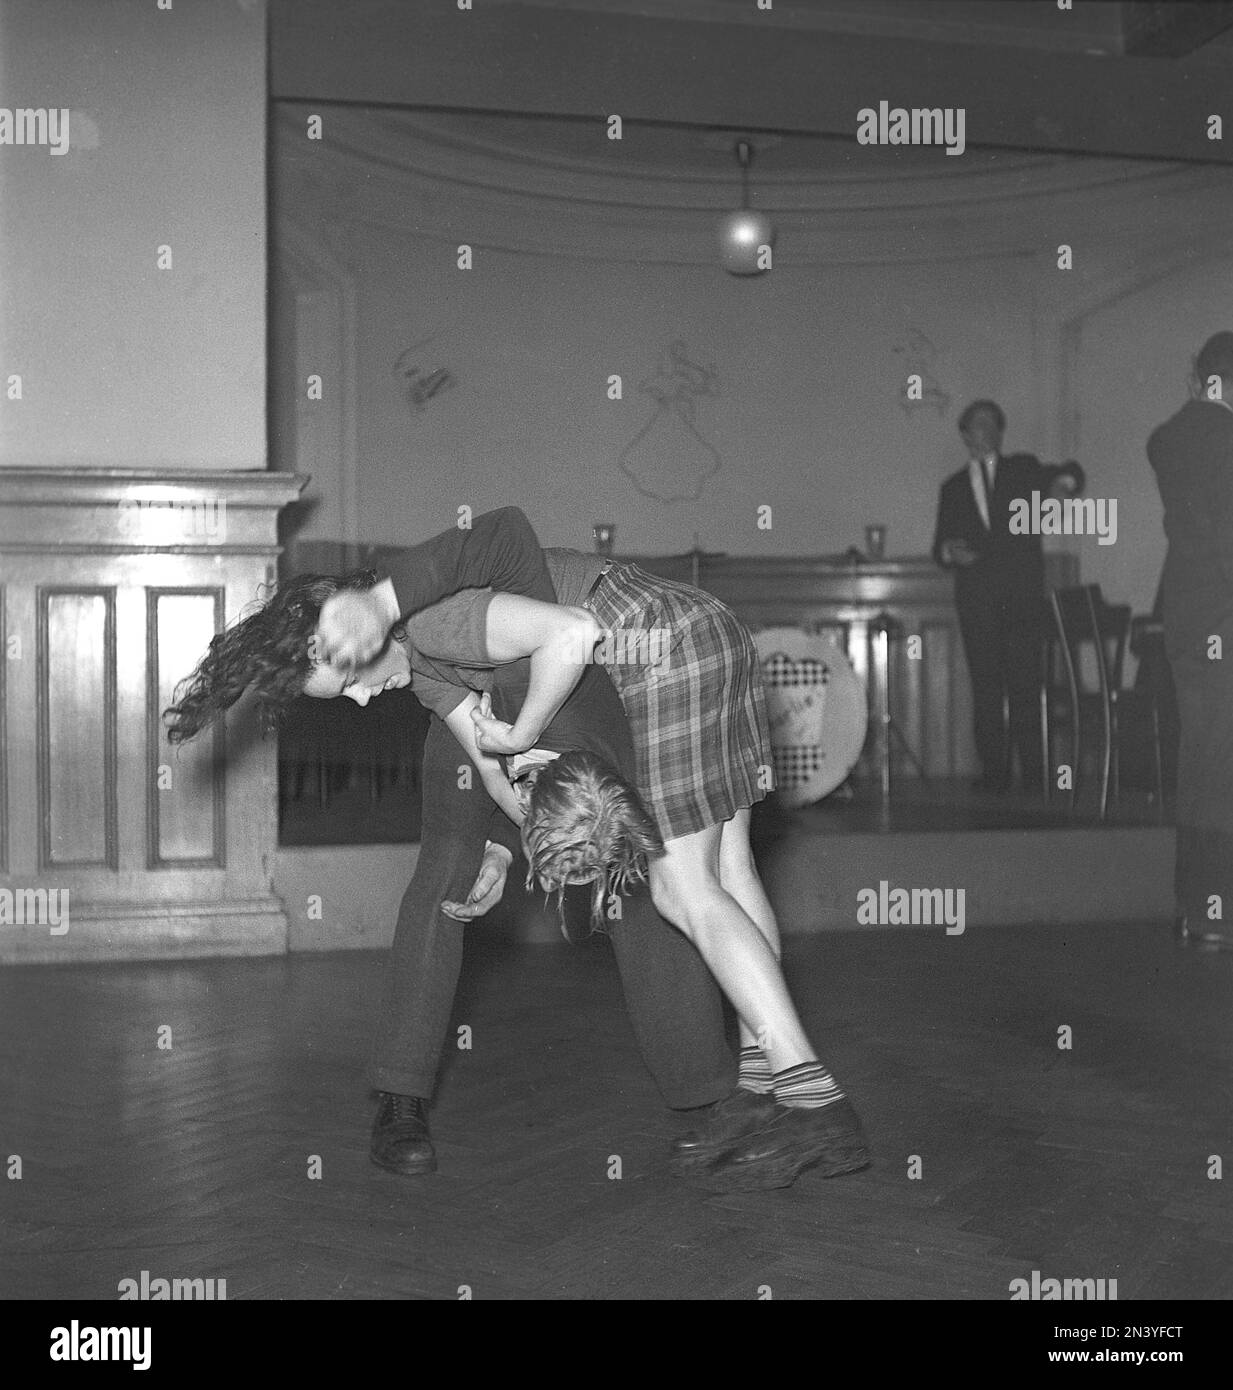 Jitterbug-Tanz. Ein Tanz, der in den Vereinigten Staaten popularisiert wurde und während des Zweiten Weltkriegs von amerikanischen Soldaten und Matrosen auf der ganzen Welt verbreitet wurde. Ein junges Paar tanzt den Jitterbug Tanz 1944 und erstarrt im Moment, wenn es akrobatisch ist. Kristoffersson Ref. L3-3 Stockfoto